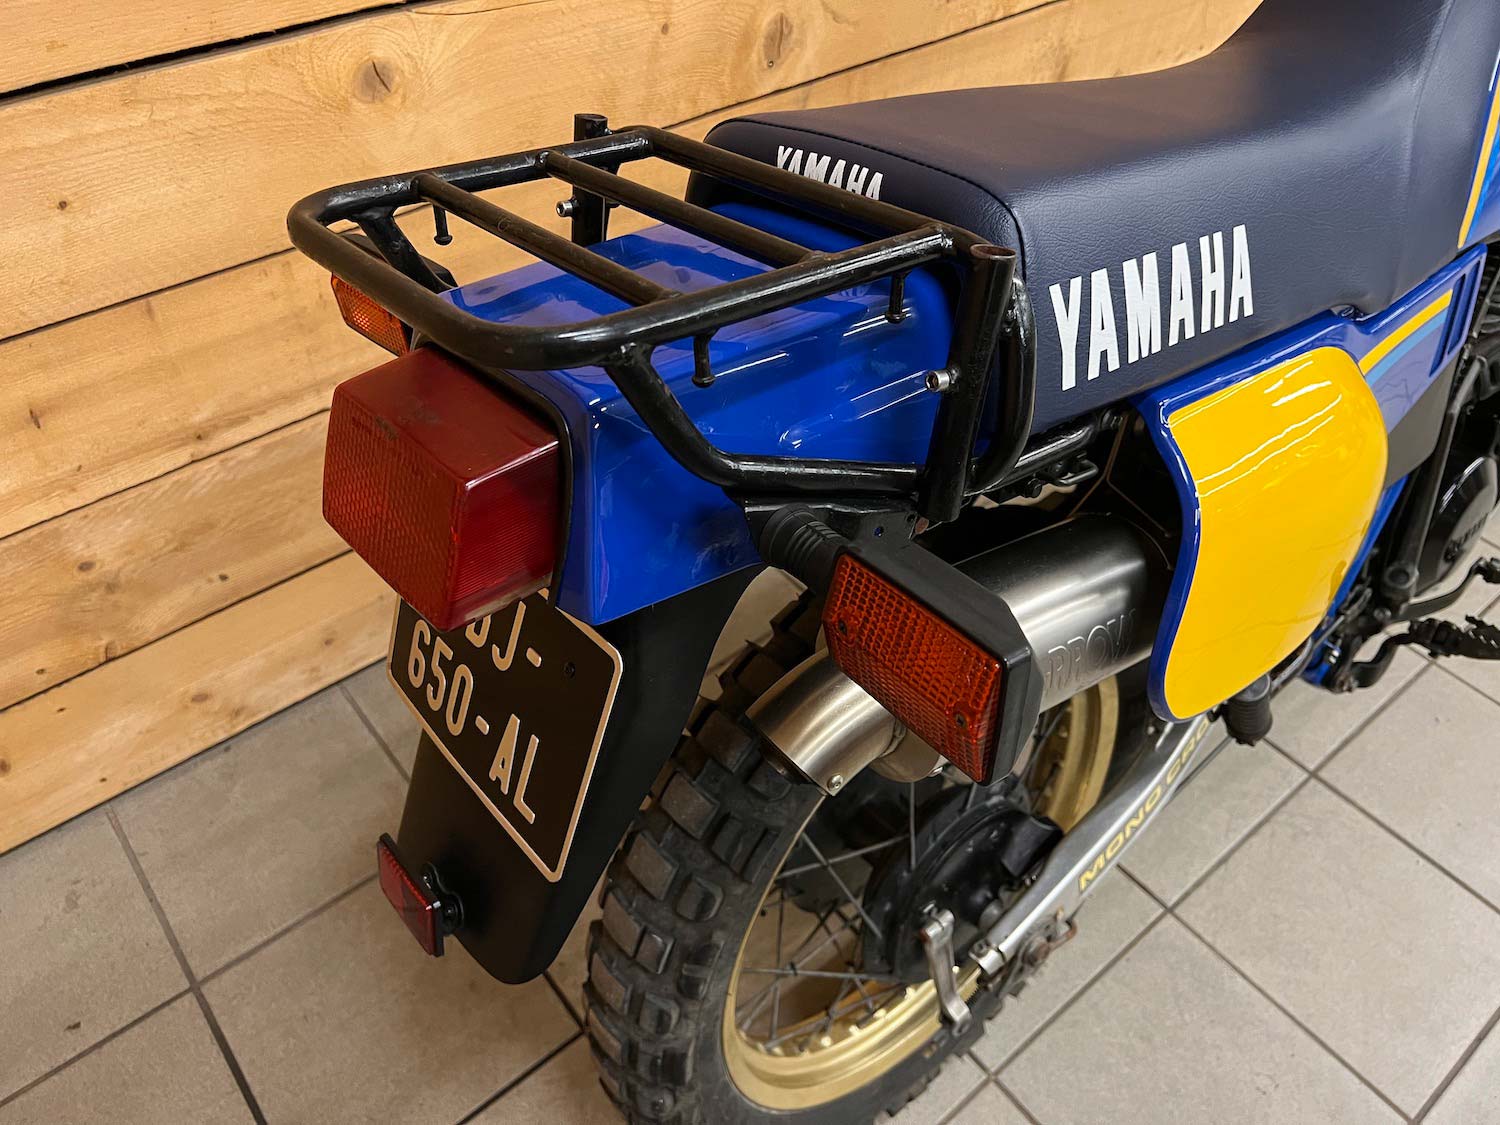 Yamaha_Tenere_XTZ600_cezanne_classic_motorcycle_4-147.jpg